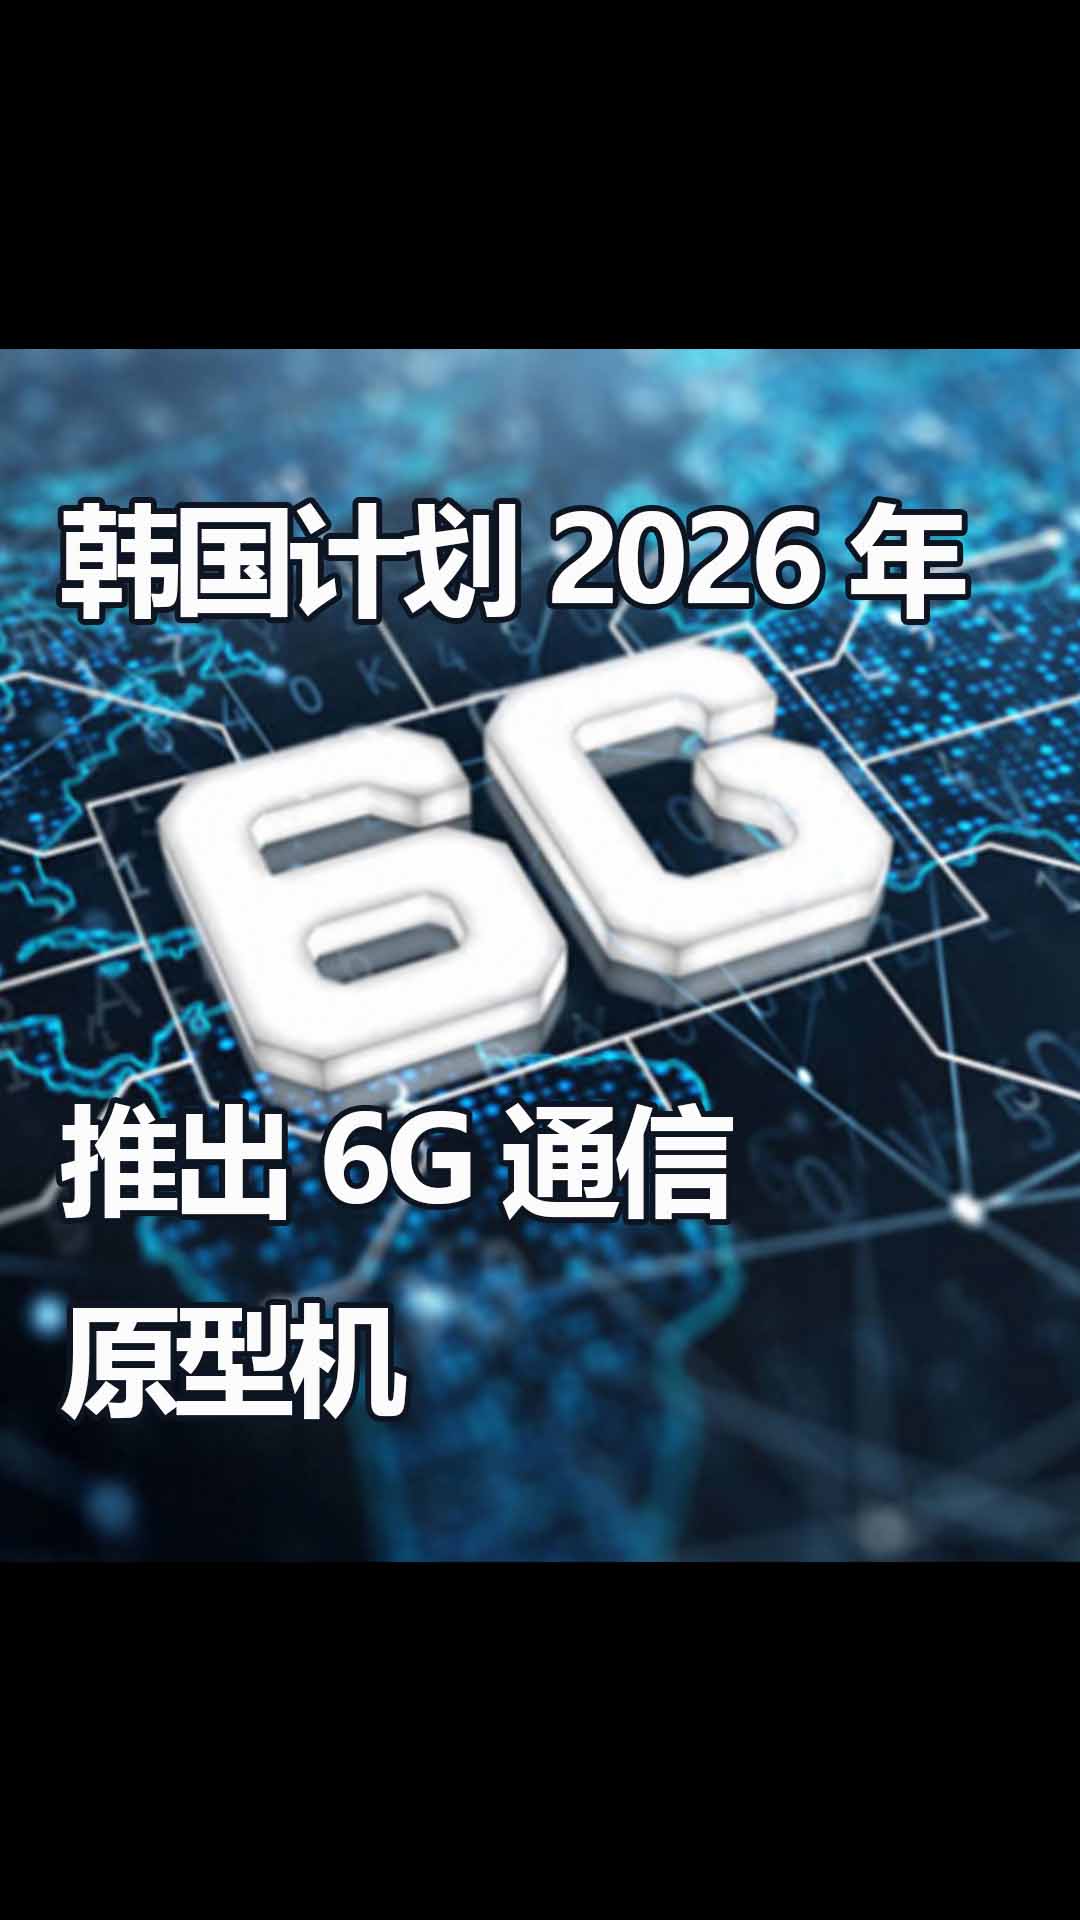 比亞迪發布超高精度單節鋰電池保護芯片；受封控政策影響友達昆山廠減產約 30%產能；韓國計劃在2026年推出6G